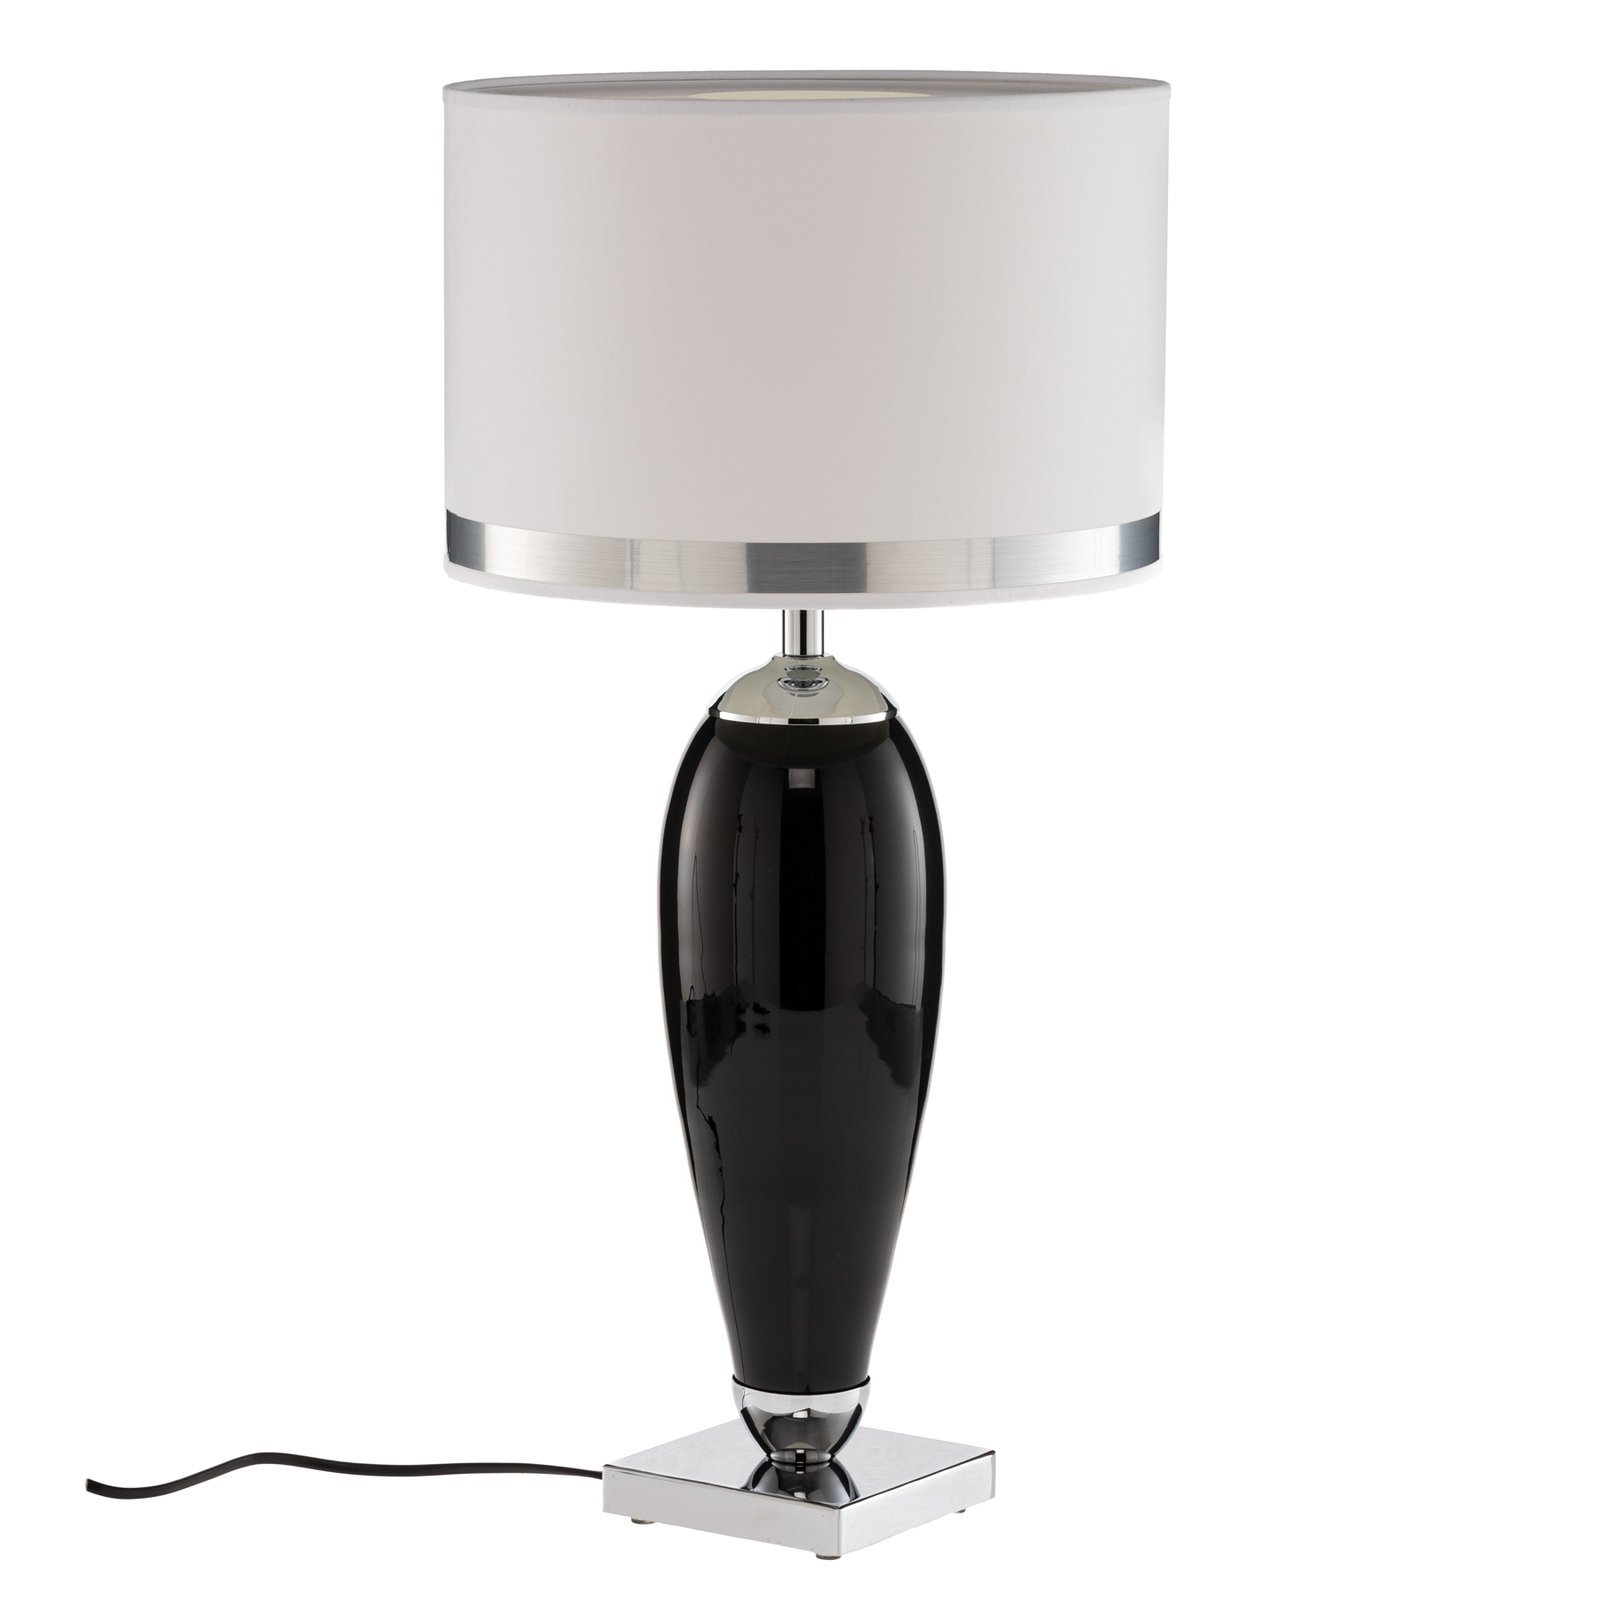 Lampa stołowa Lund biała i czarna, wysokość 60 cm